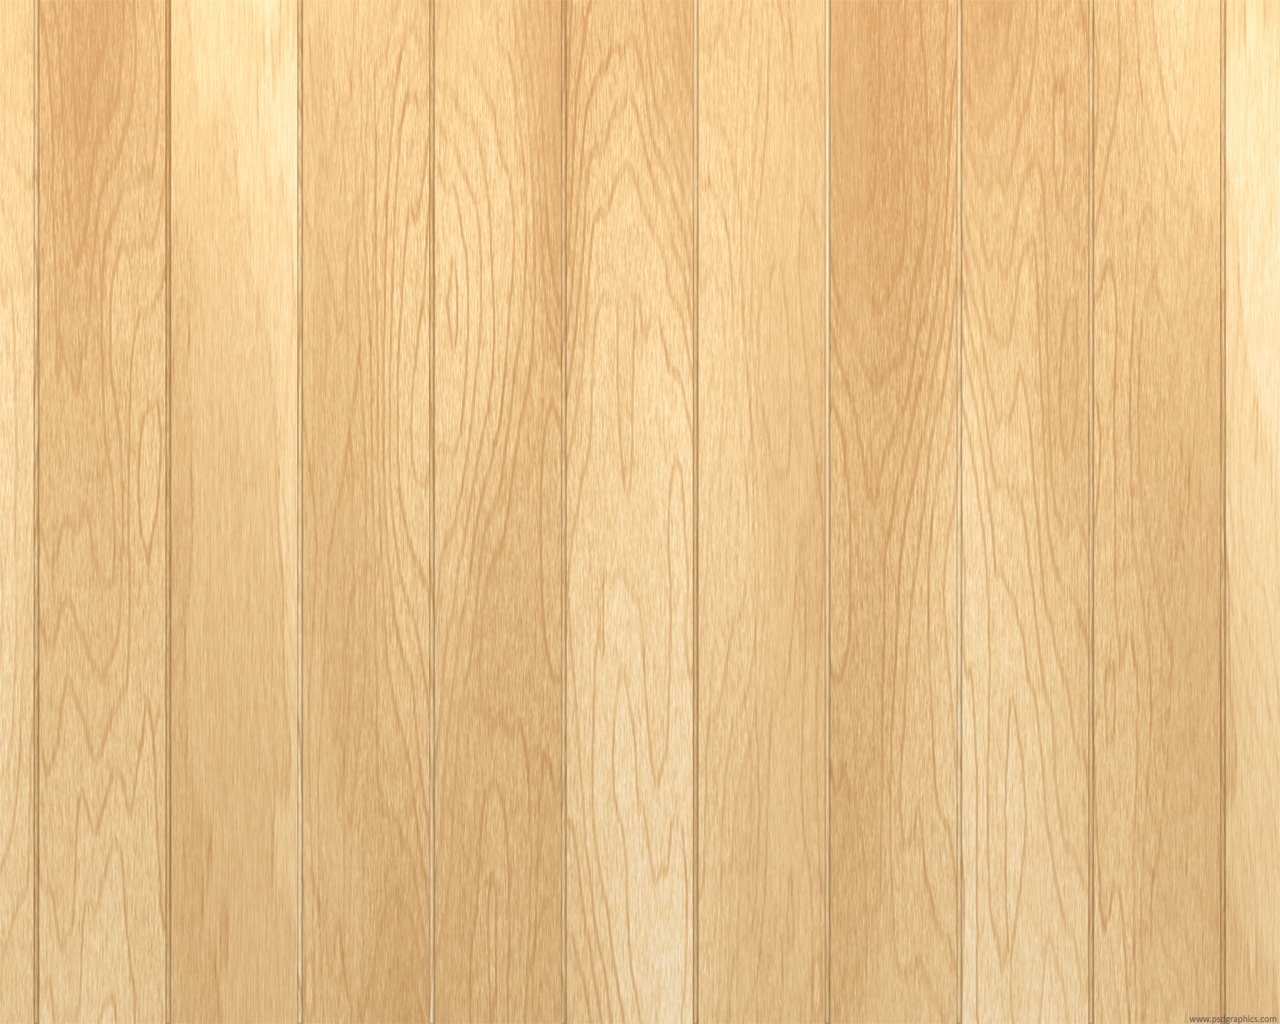 Light Wood Floor Texture